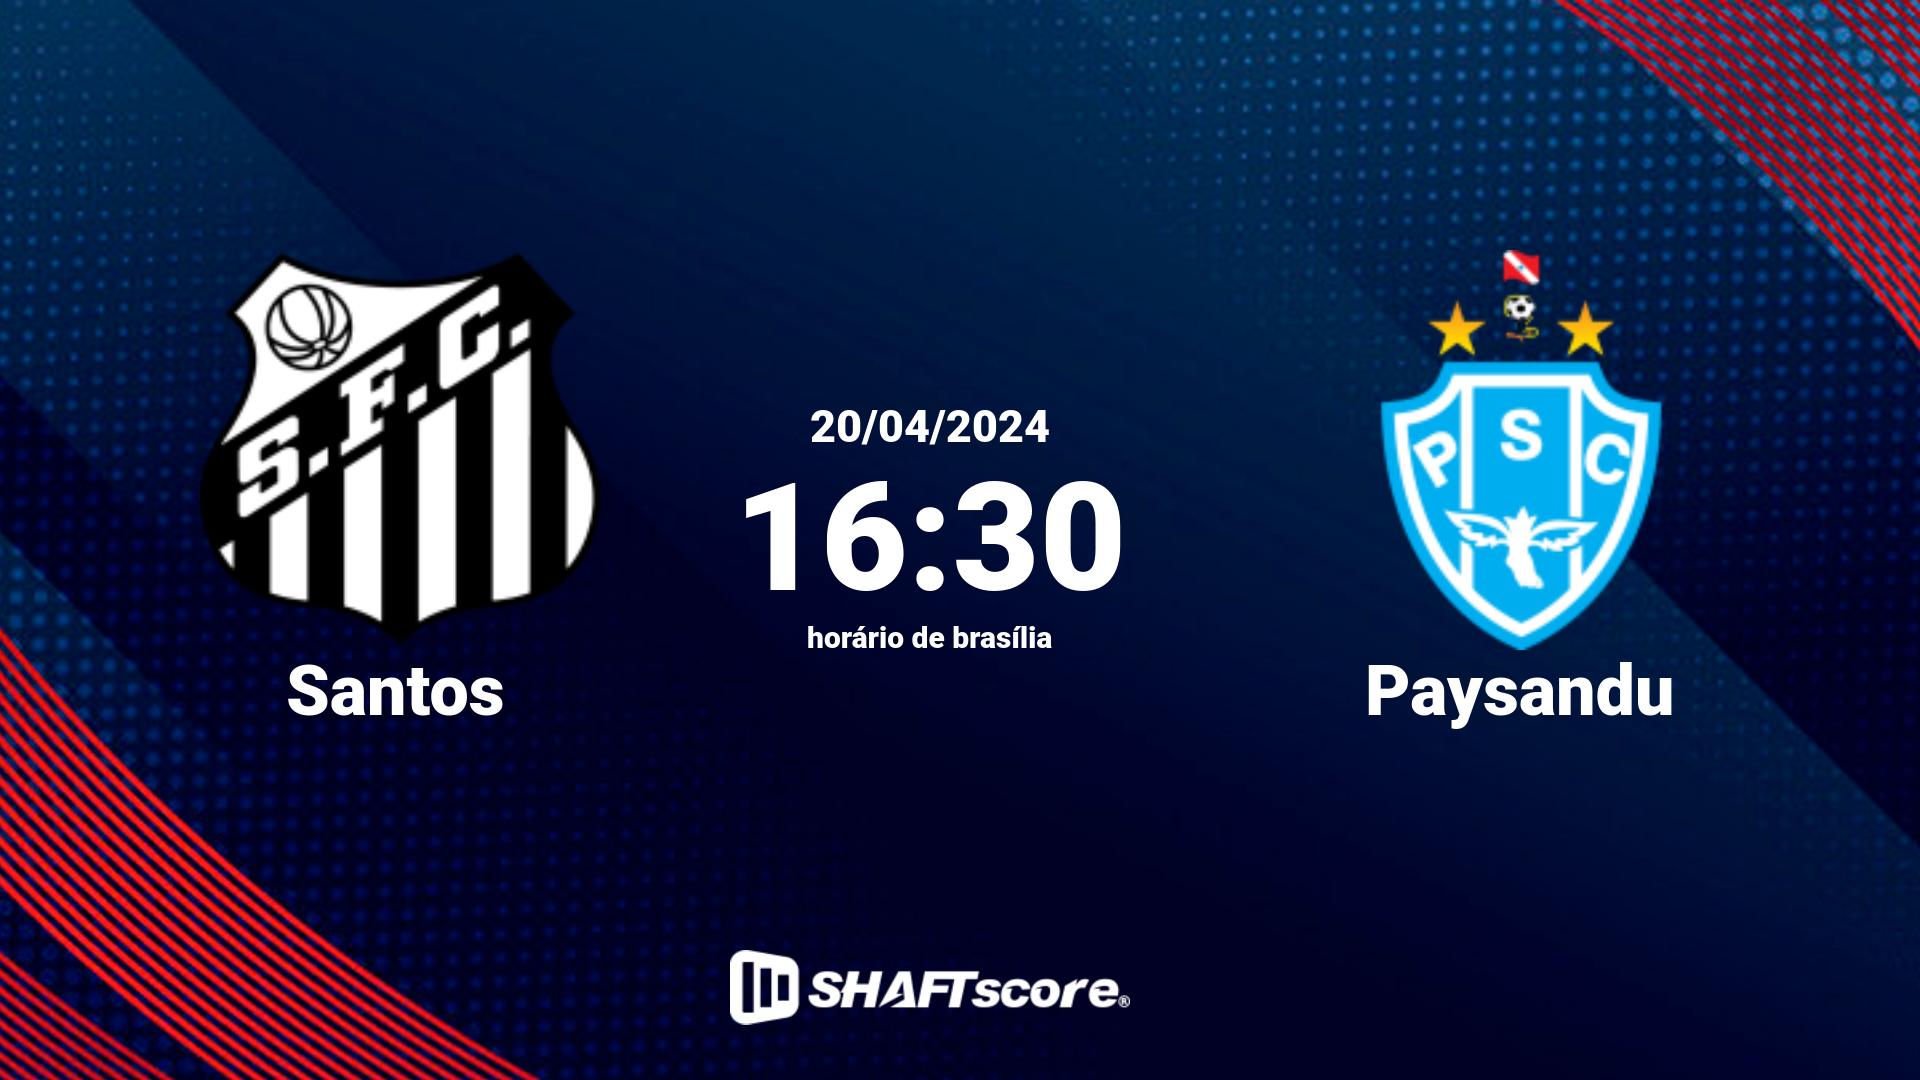 Estatísticas do jogo Santos vs Paysandu 20.04 16:30